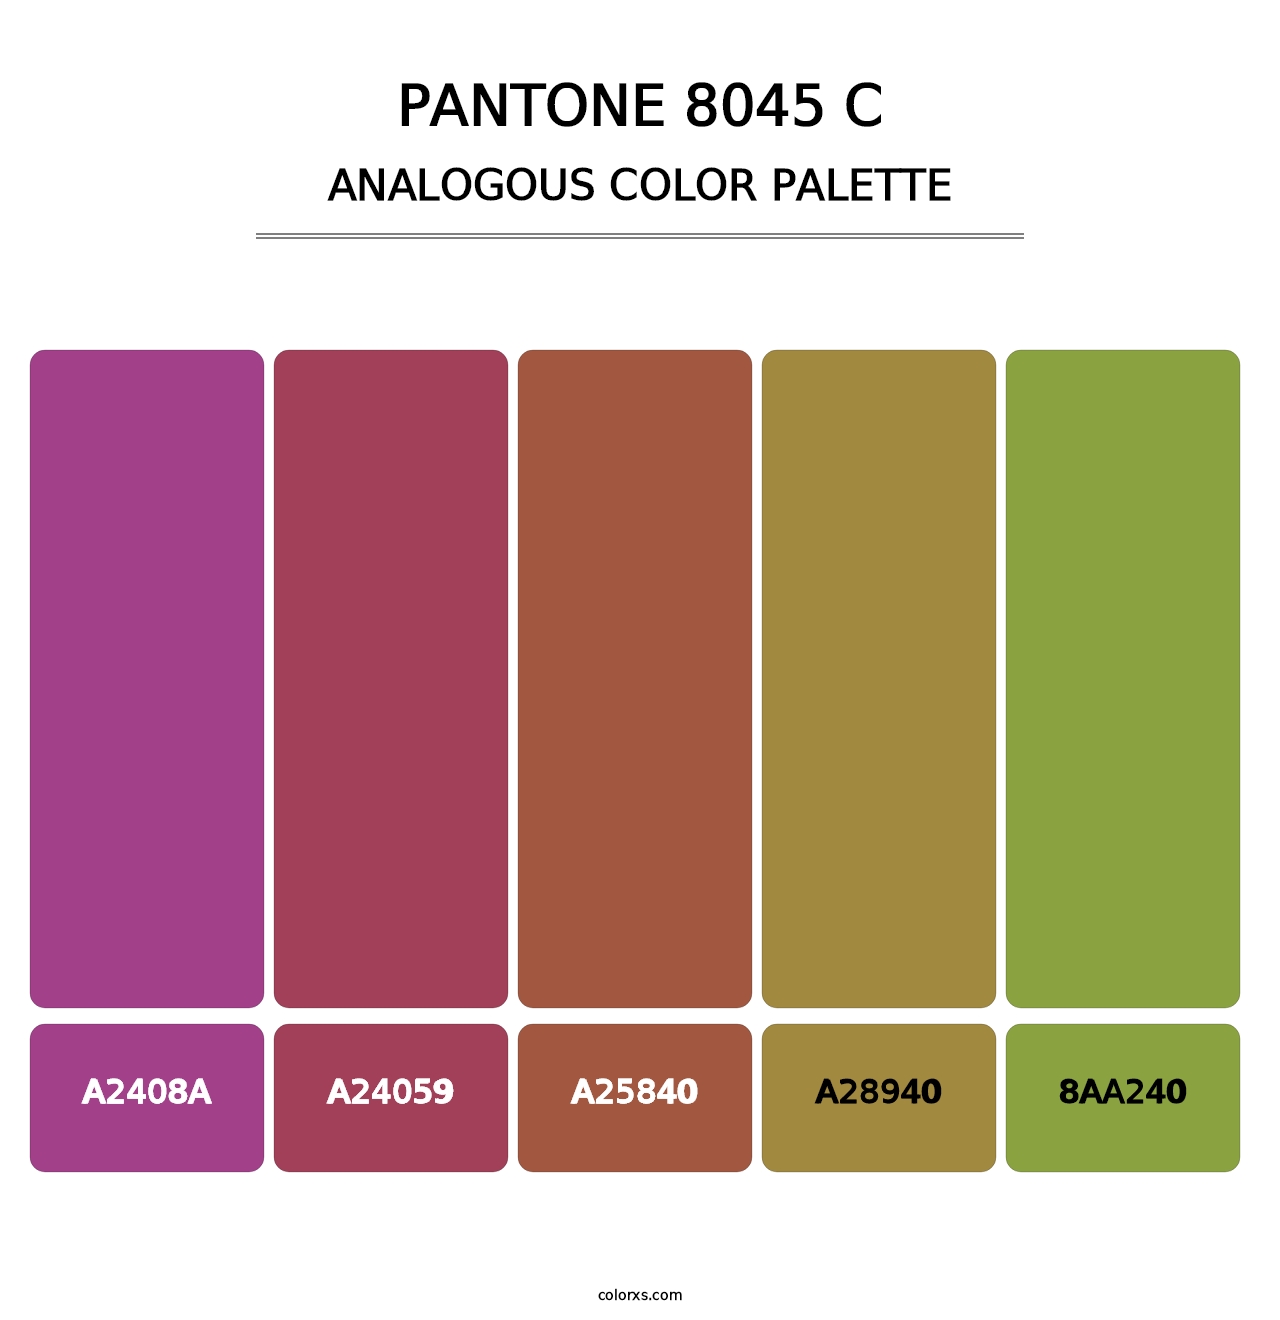 PANTONE 8045 C - Analogous Color Palette